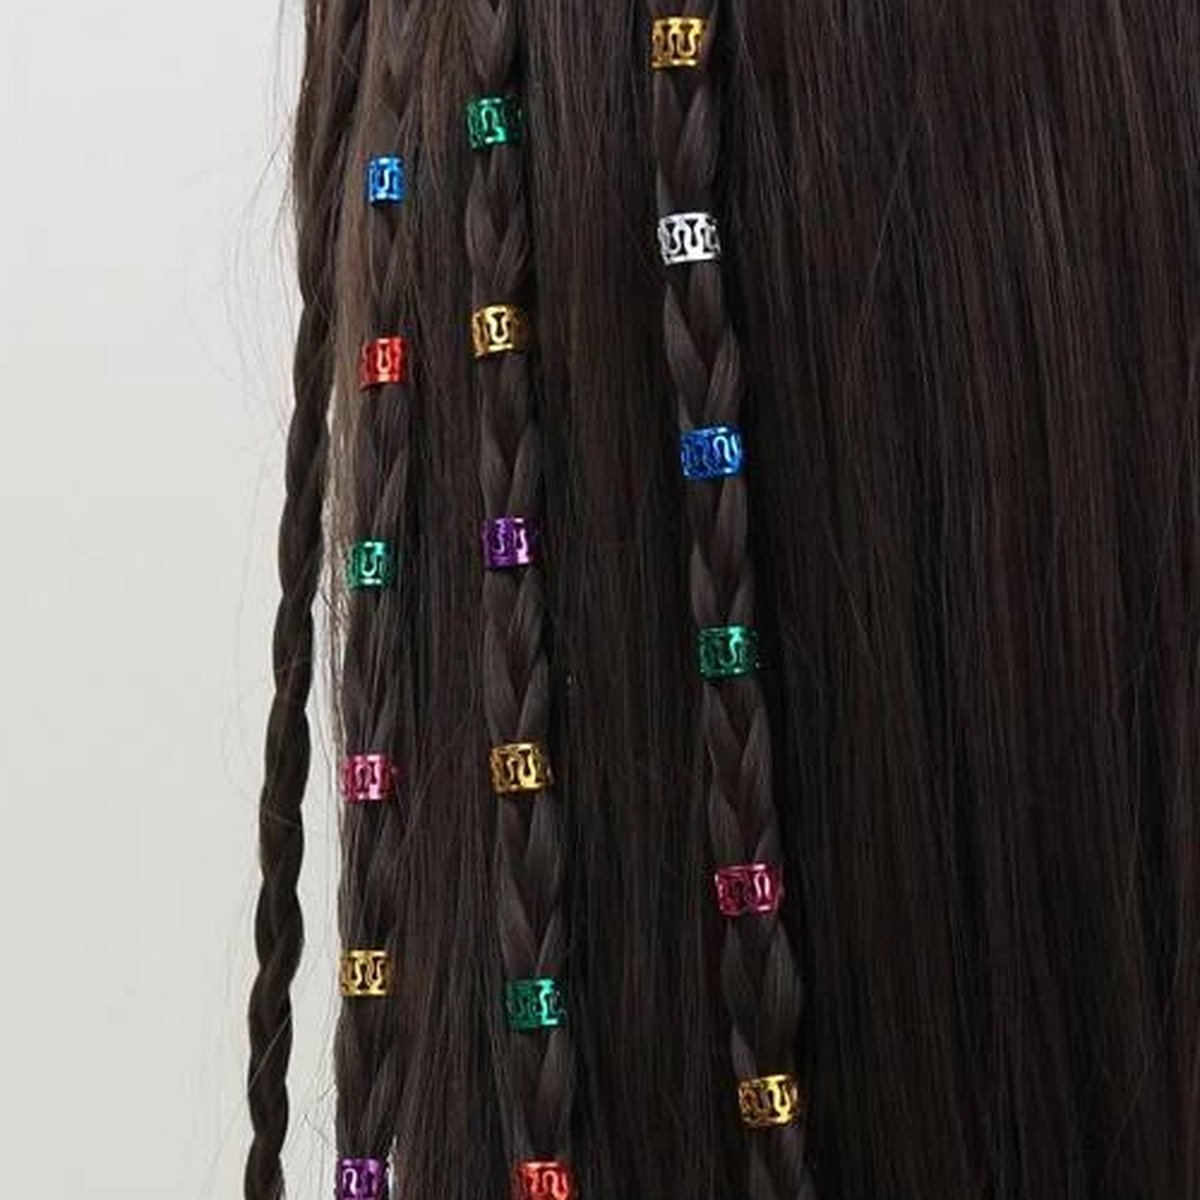 Haar Ringen Vlechten Meerkleurig (40 stuks) - Haar Kralen - Haarringen dreadlock kralen - Kraaltjes / Clips - Haar Accessoires Vrouwen - Vlecht accessoires - Hair Beads Multicolor - 40 stuks